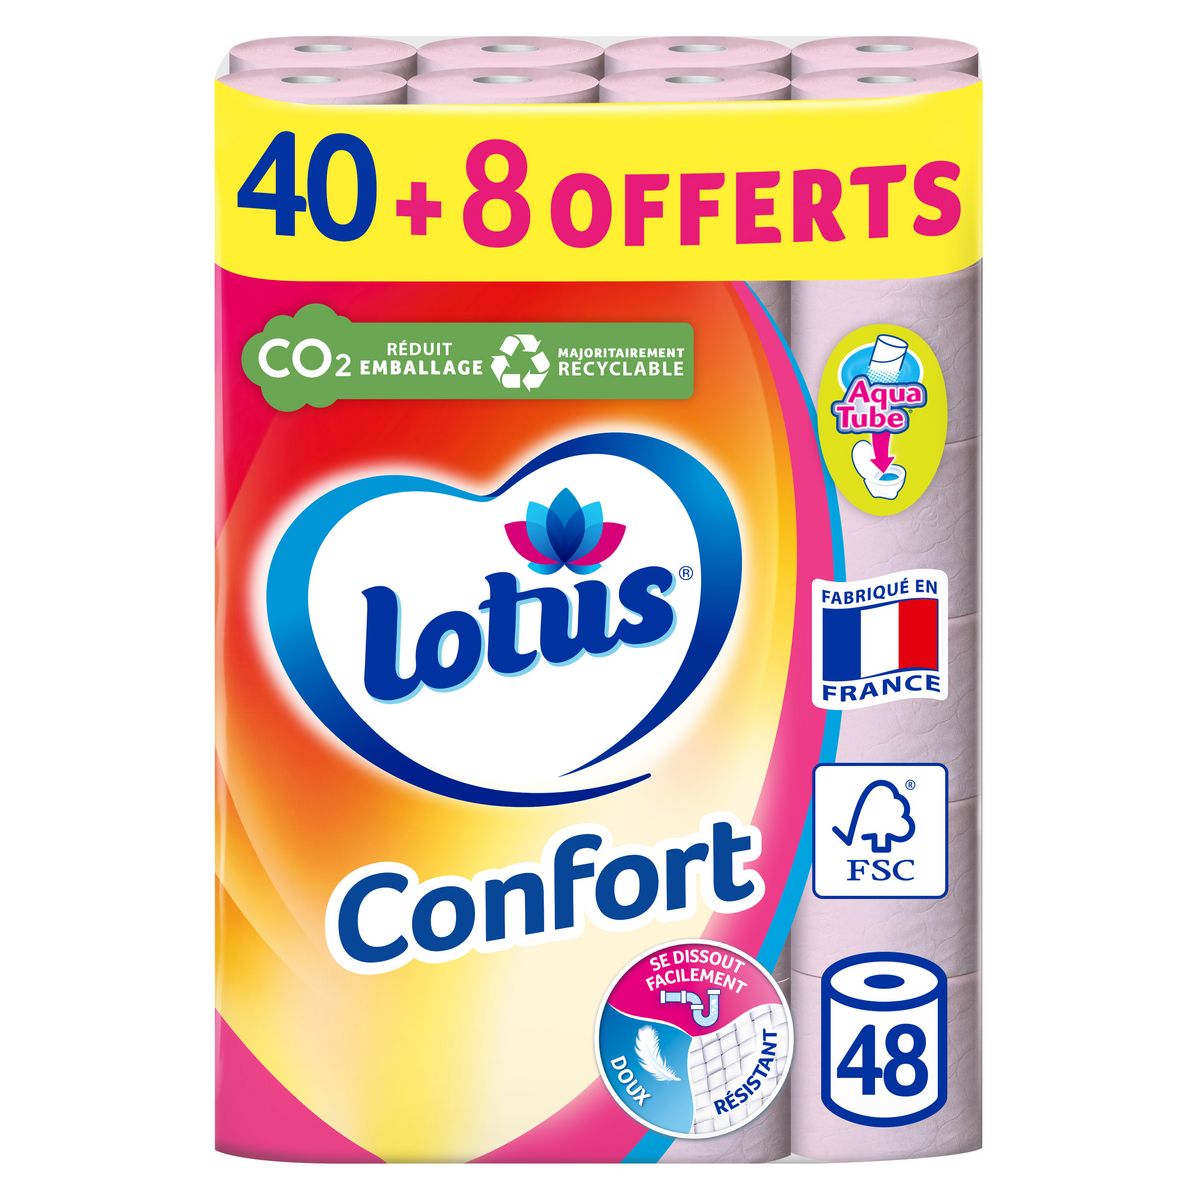 LOTUS Confort rouleaux papiers toilettes aqua tube 40+8 offerts 48 rouleaux